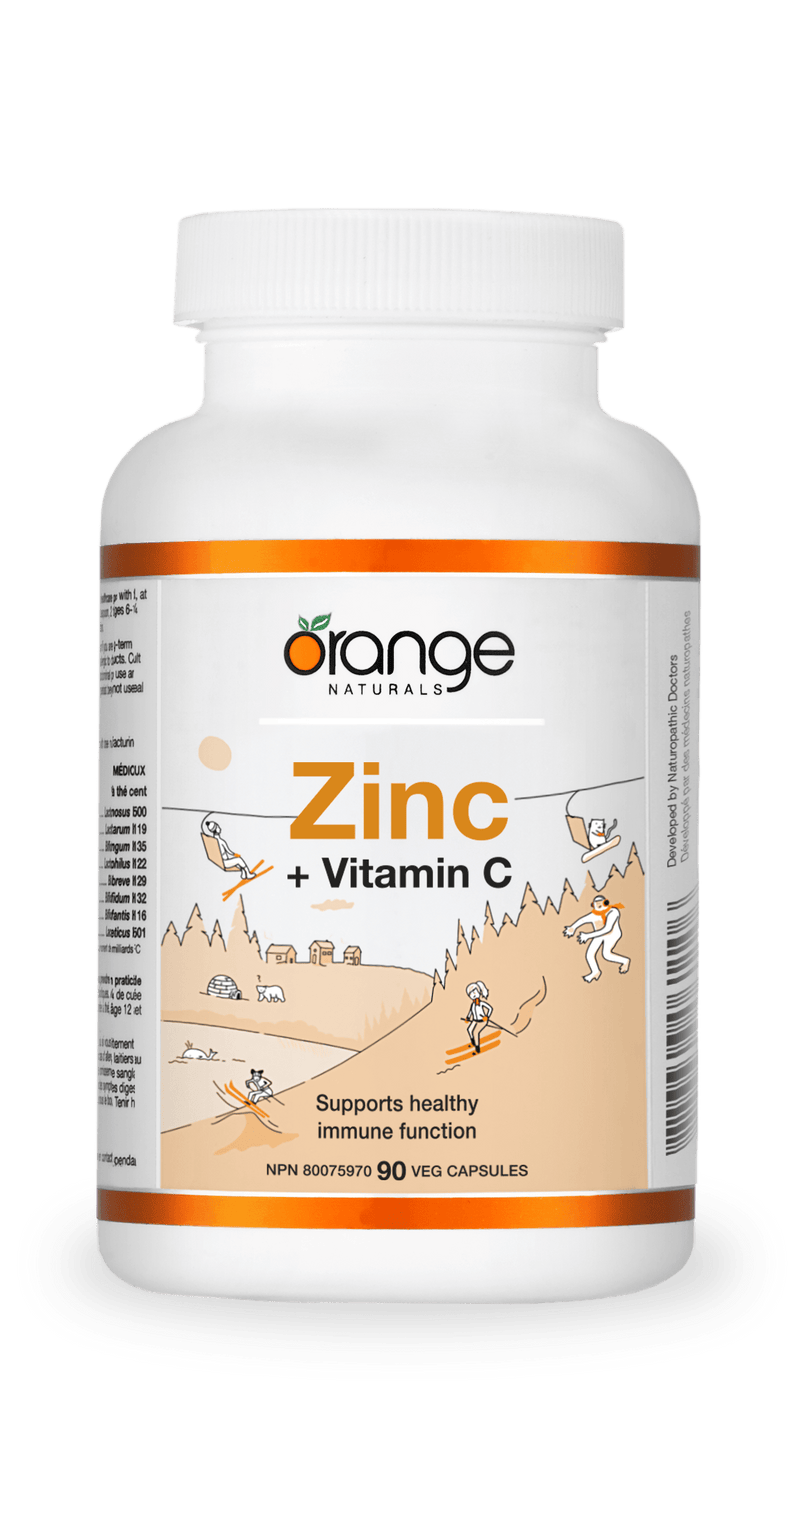 Orange Naturals Zinc citrate 50mg